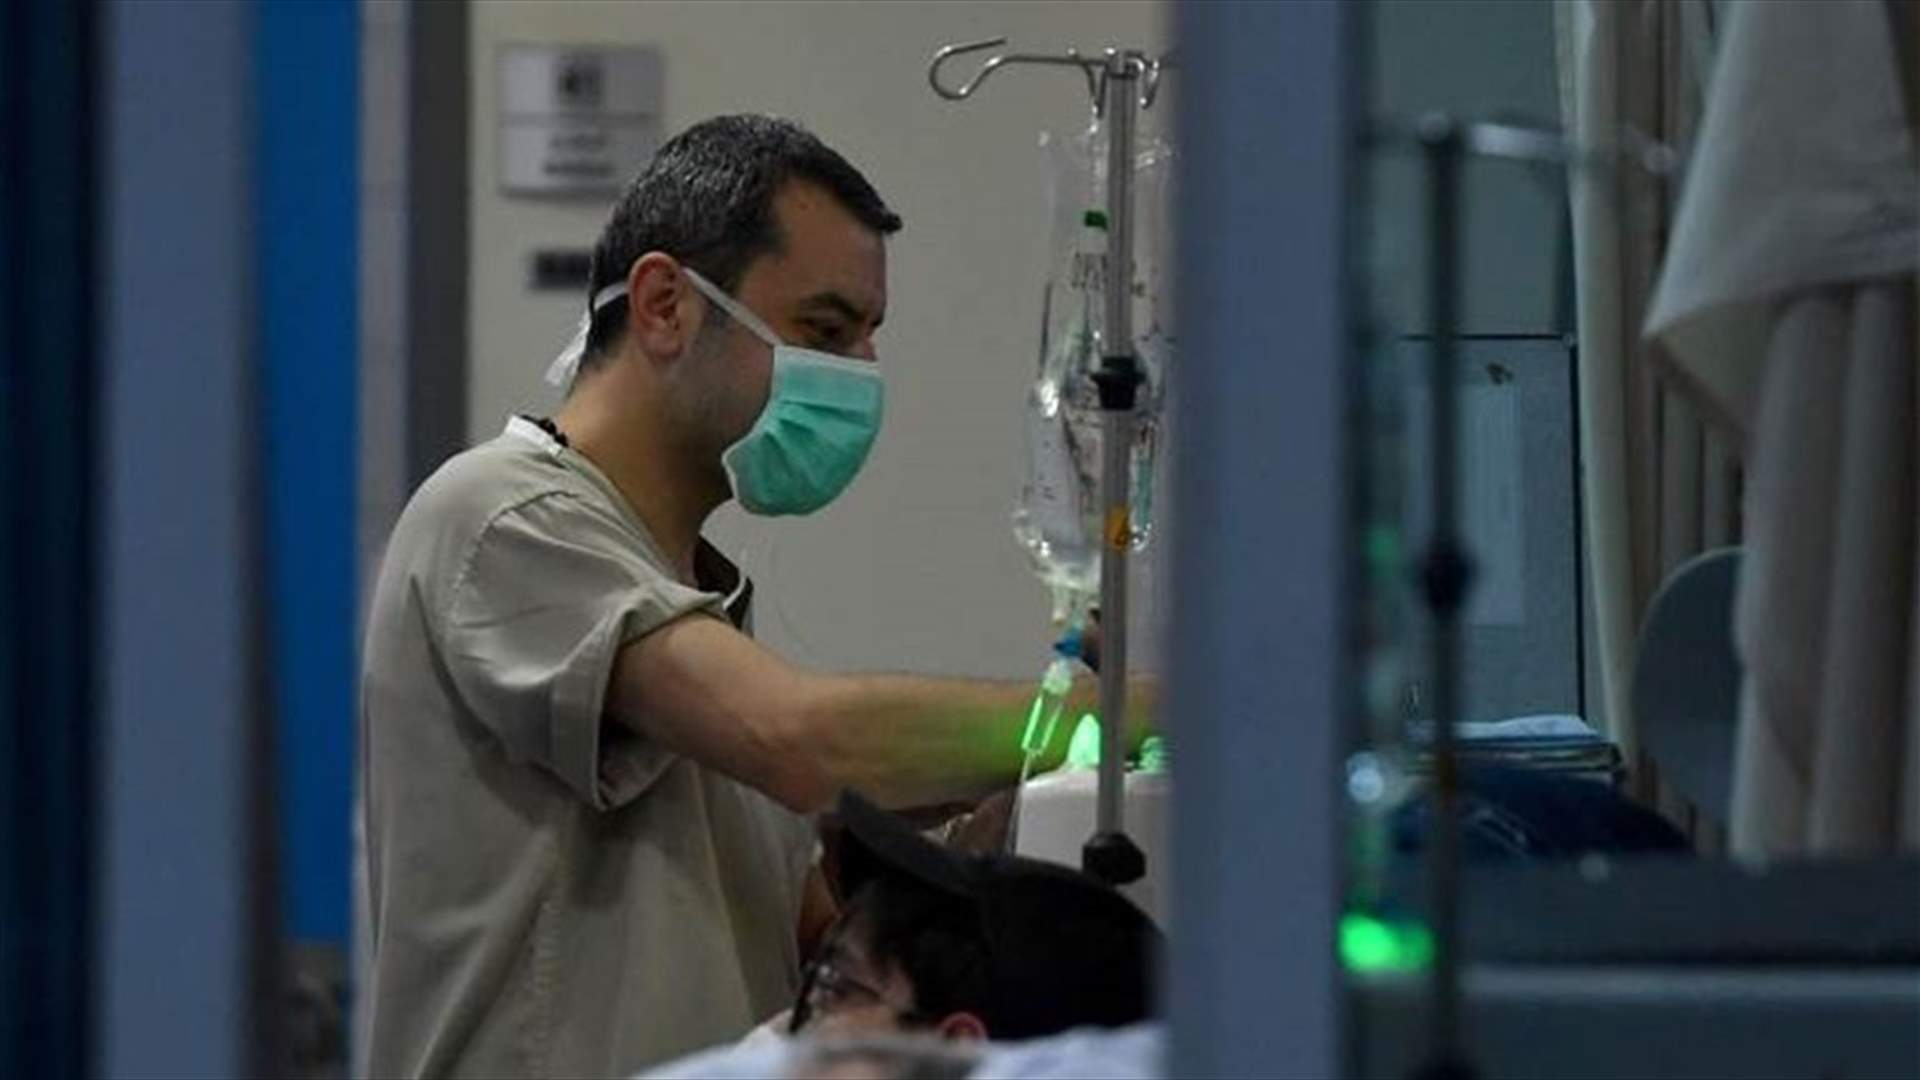 12 new Coronavirus cases registered in Lebanon